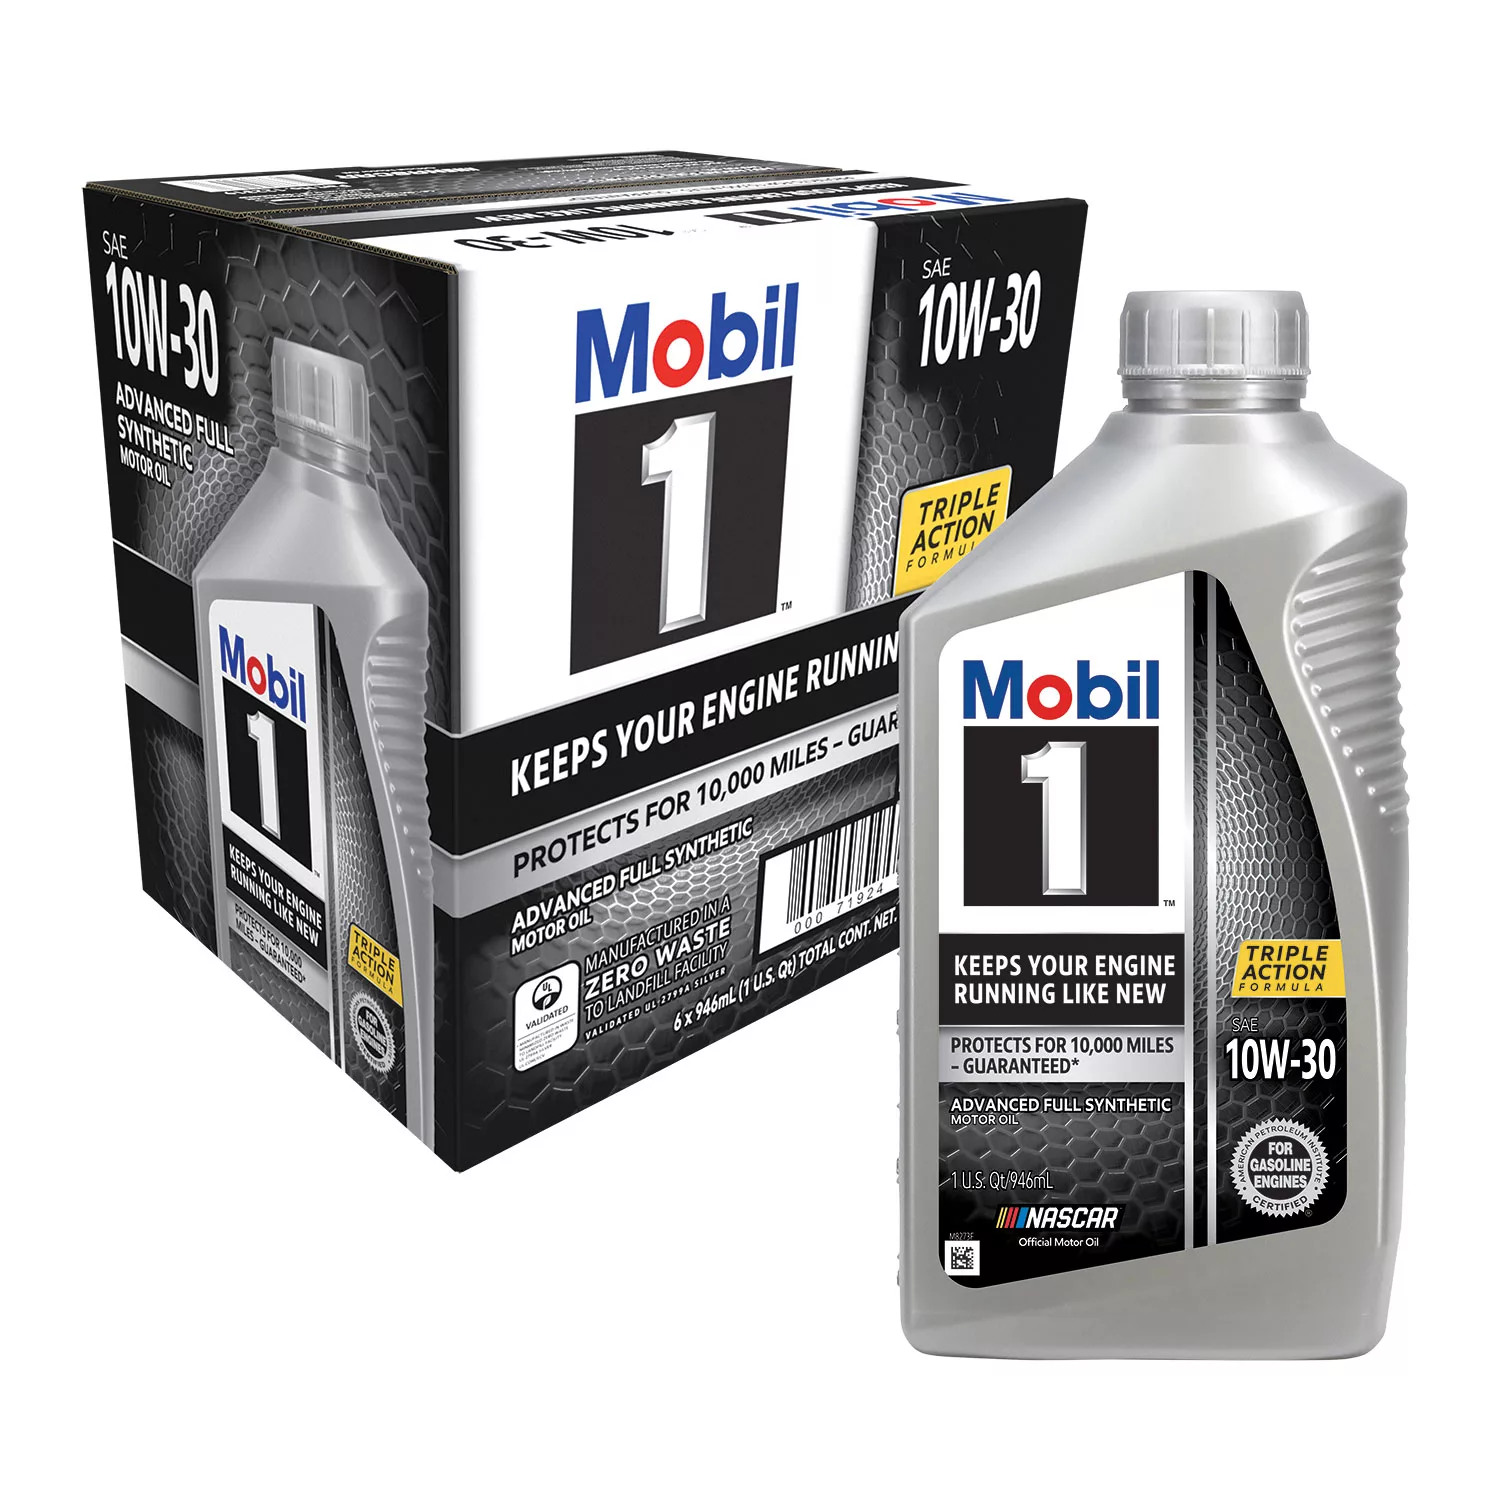 Mobil 1 10W-30 Motor Oil (6-pack/1 quart bottles)